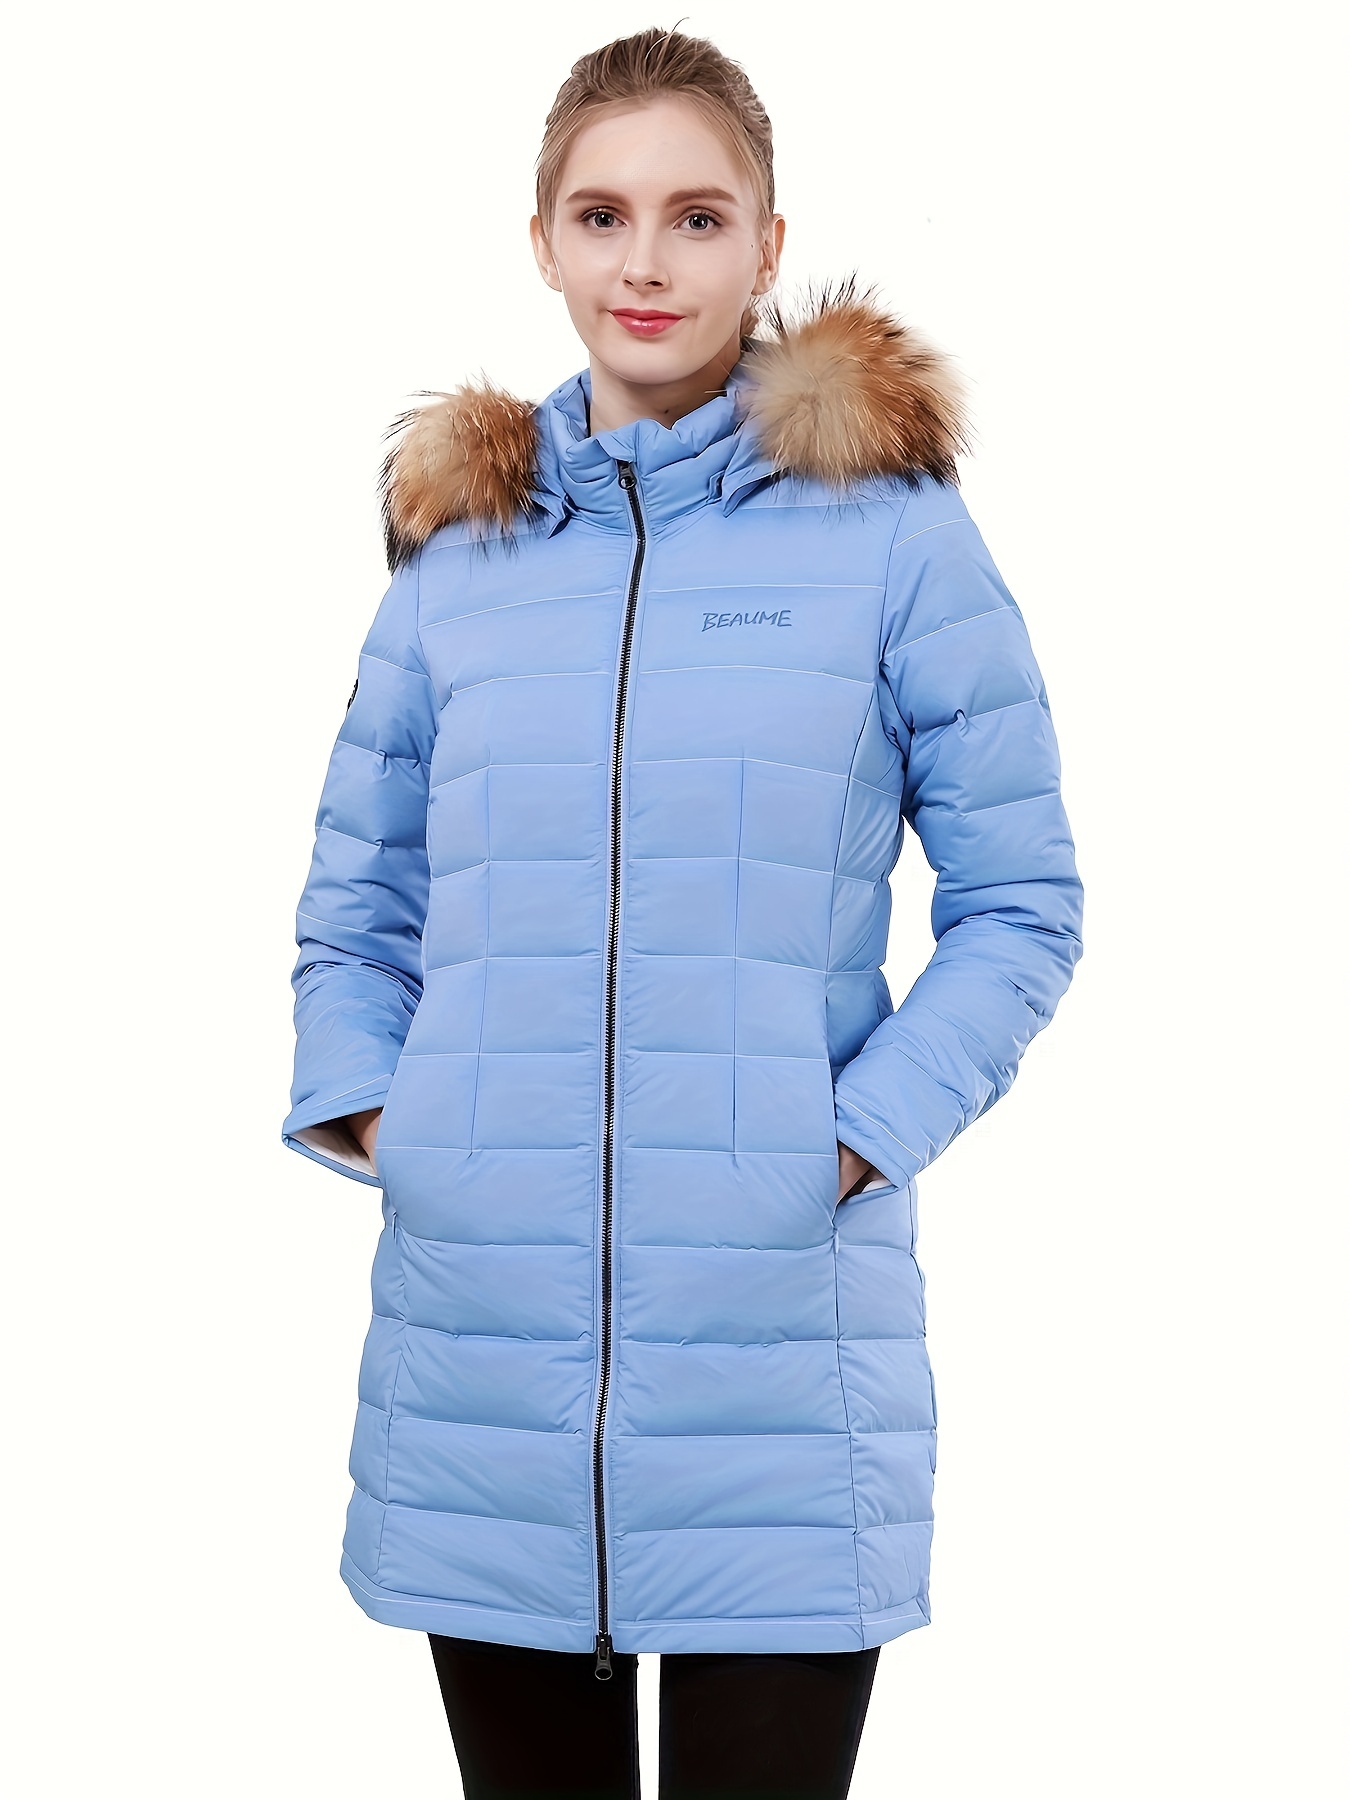 Chaqueta acolchada larga con capucha abrigo de invierno para mujer